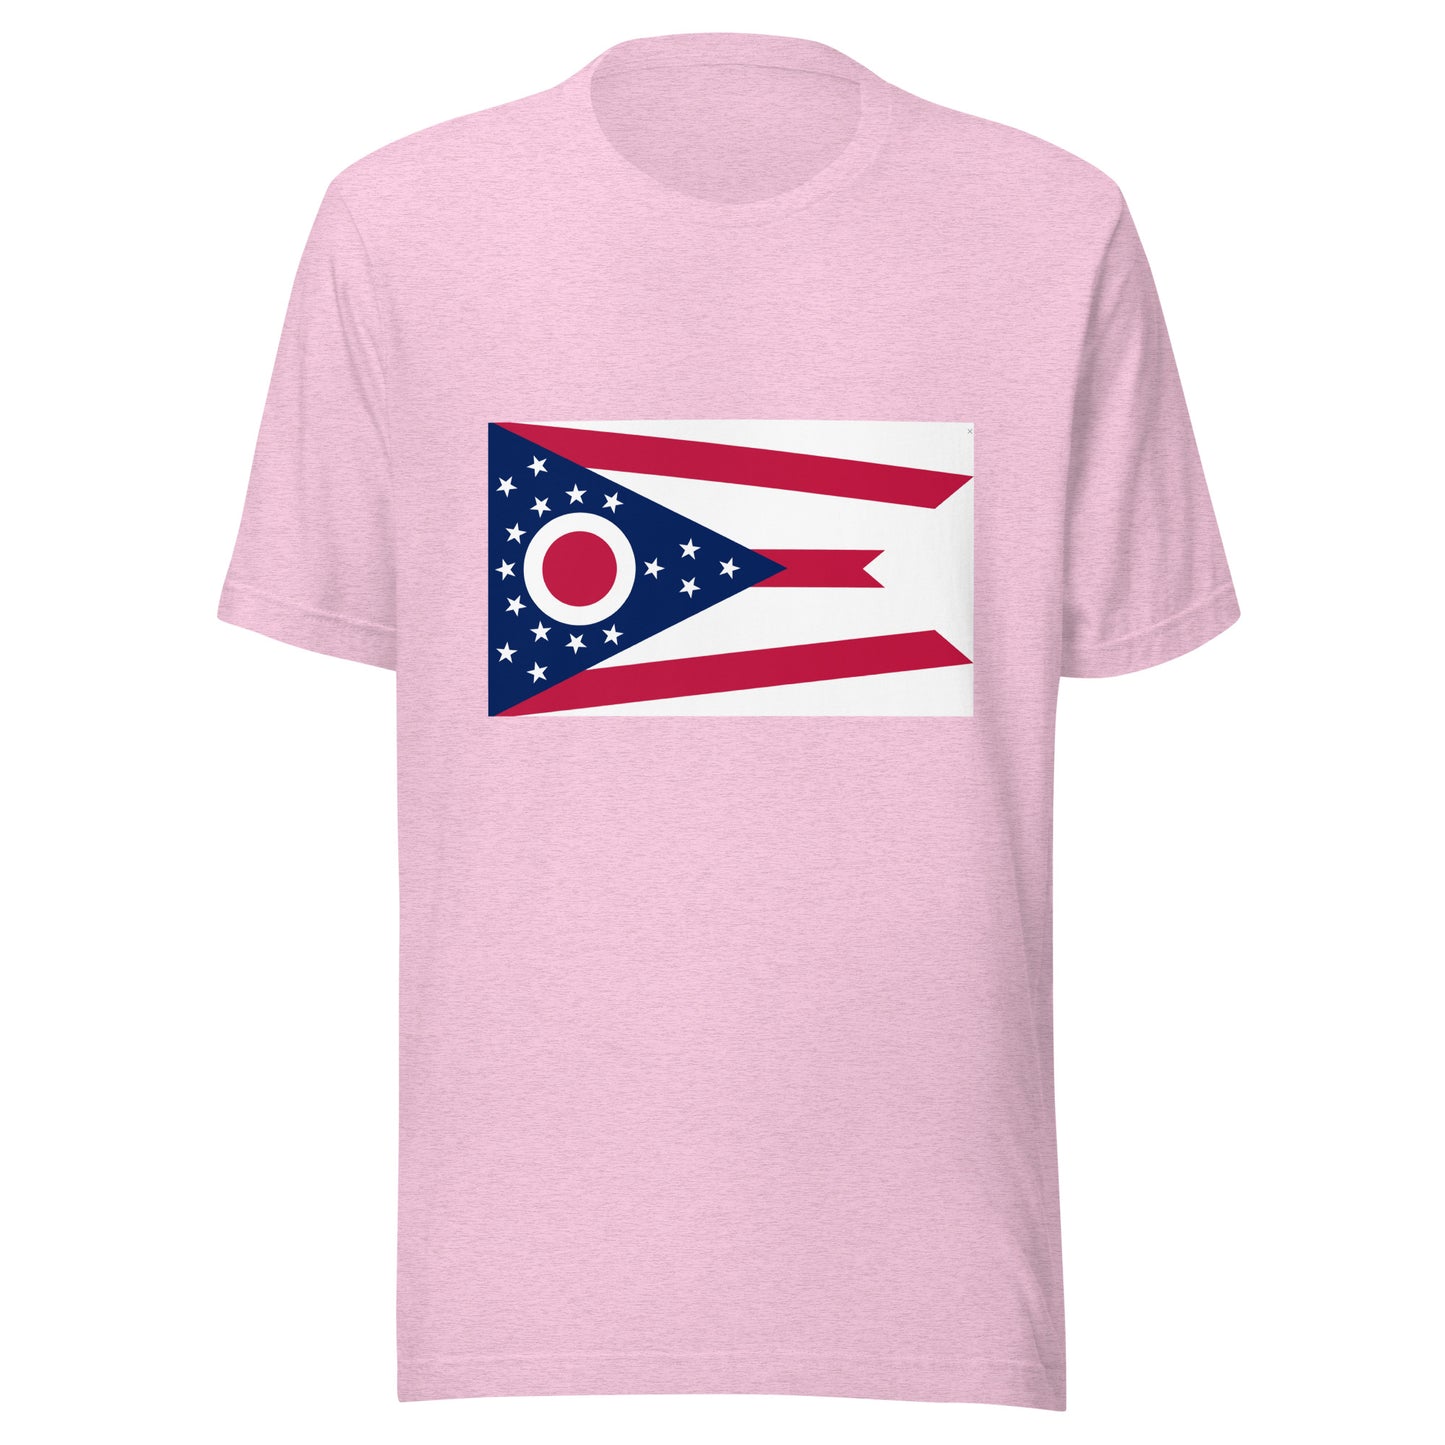 Ohio flag Unisex t-shirt